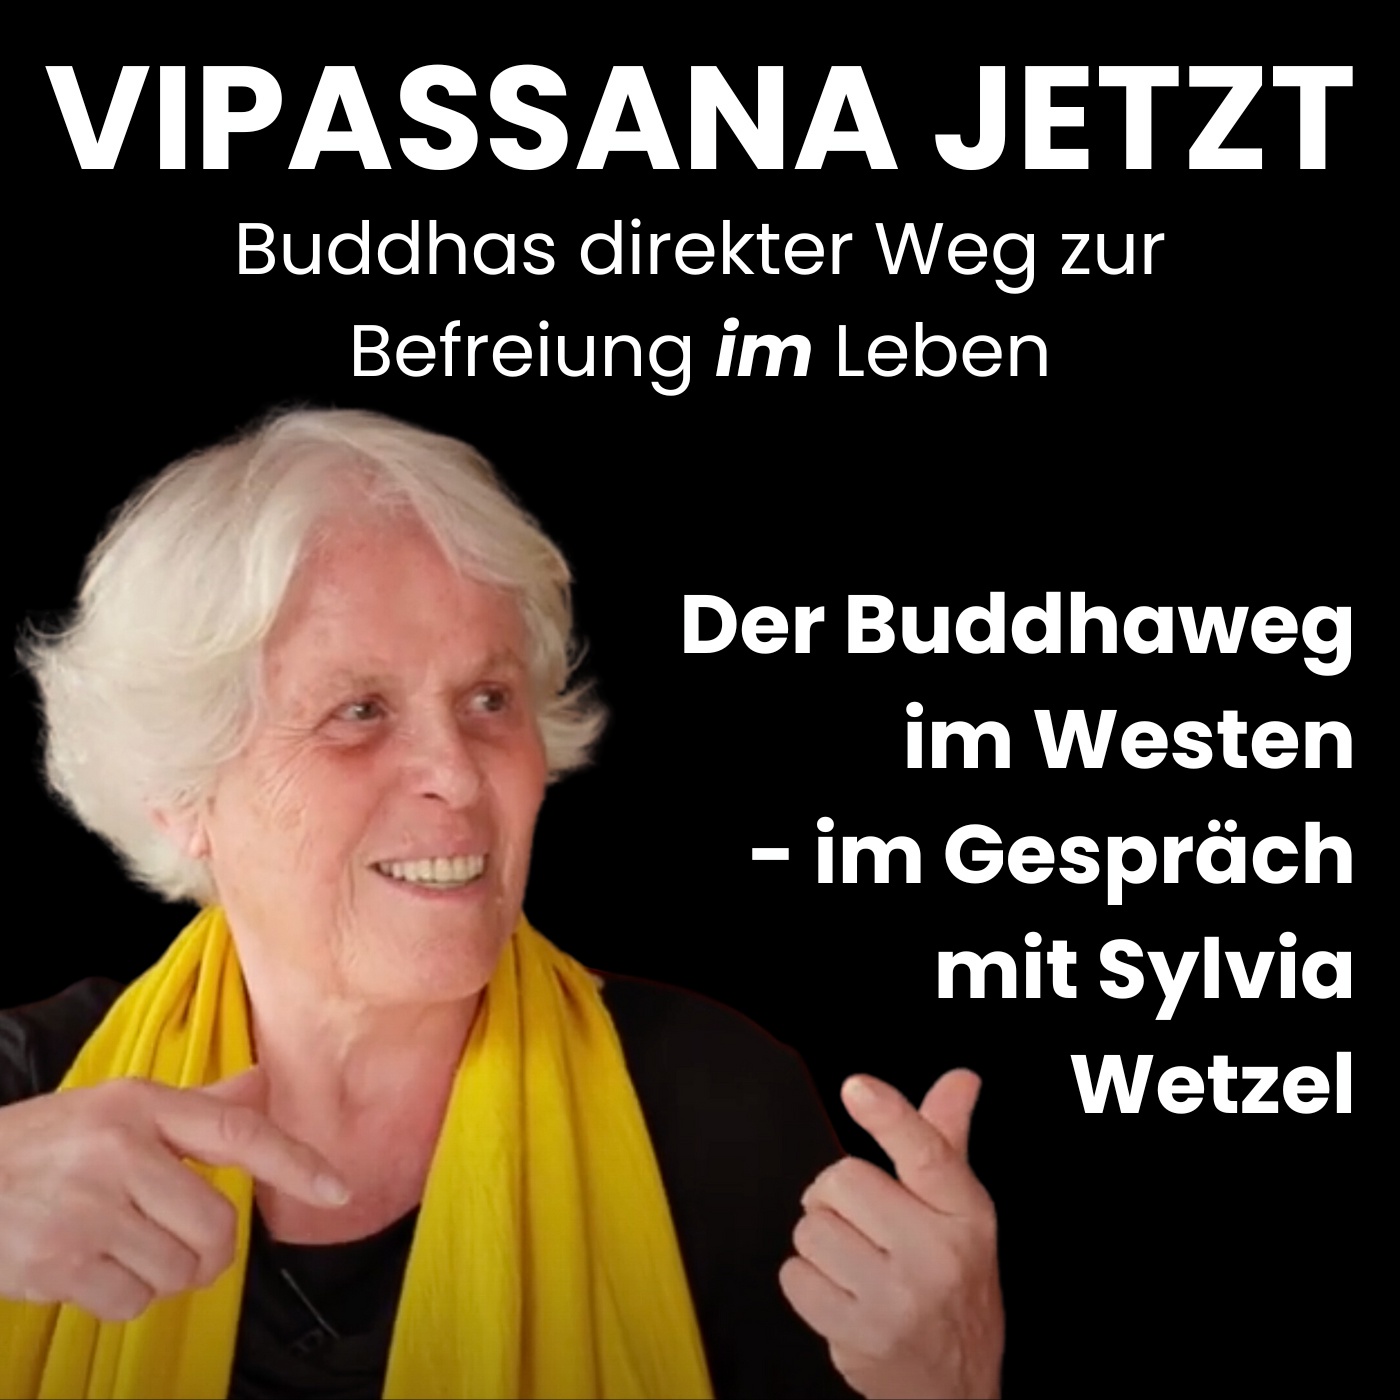 Der Buddhaweg im Westen - Im Gespräch mit Sylvia Wetzel